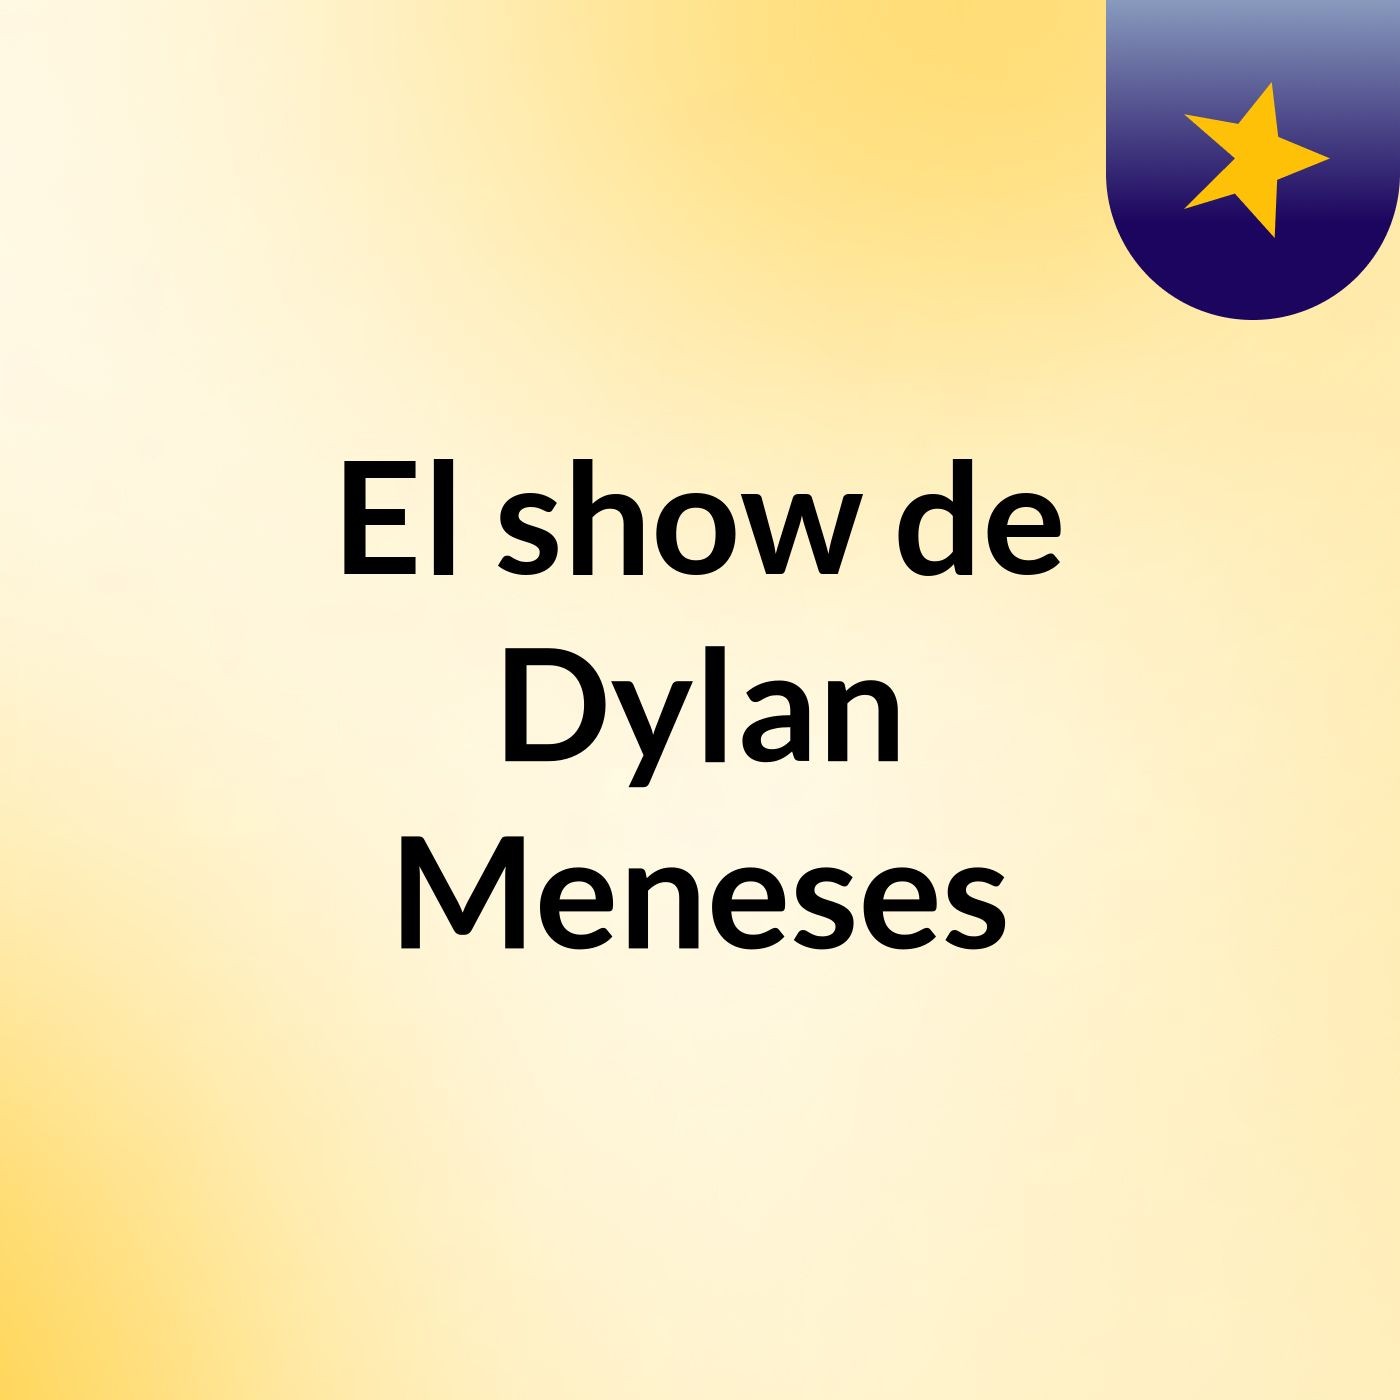 El show de Dylan Meneses